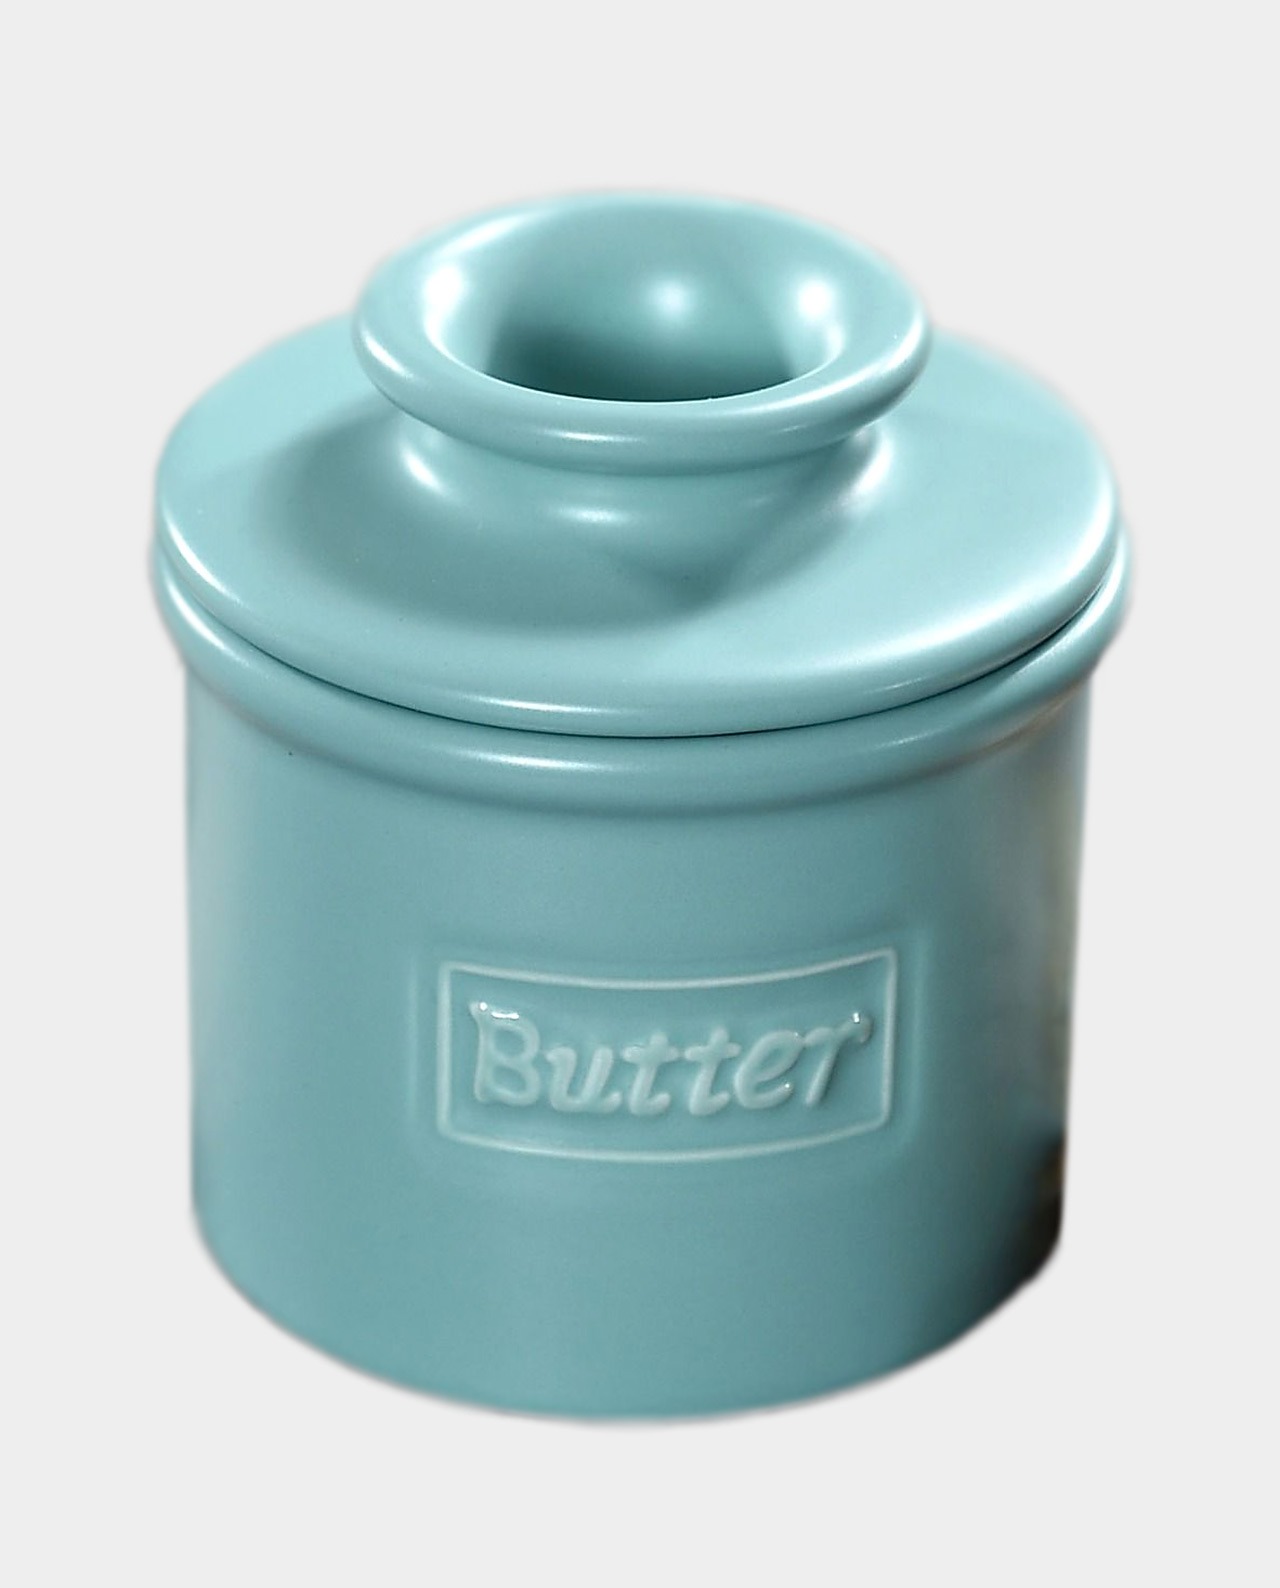 Hand Thrown Butter Keeper